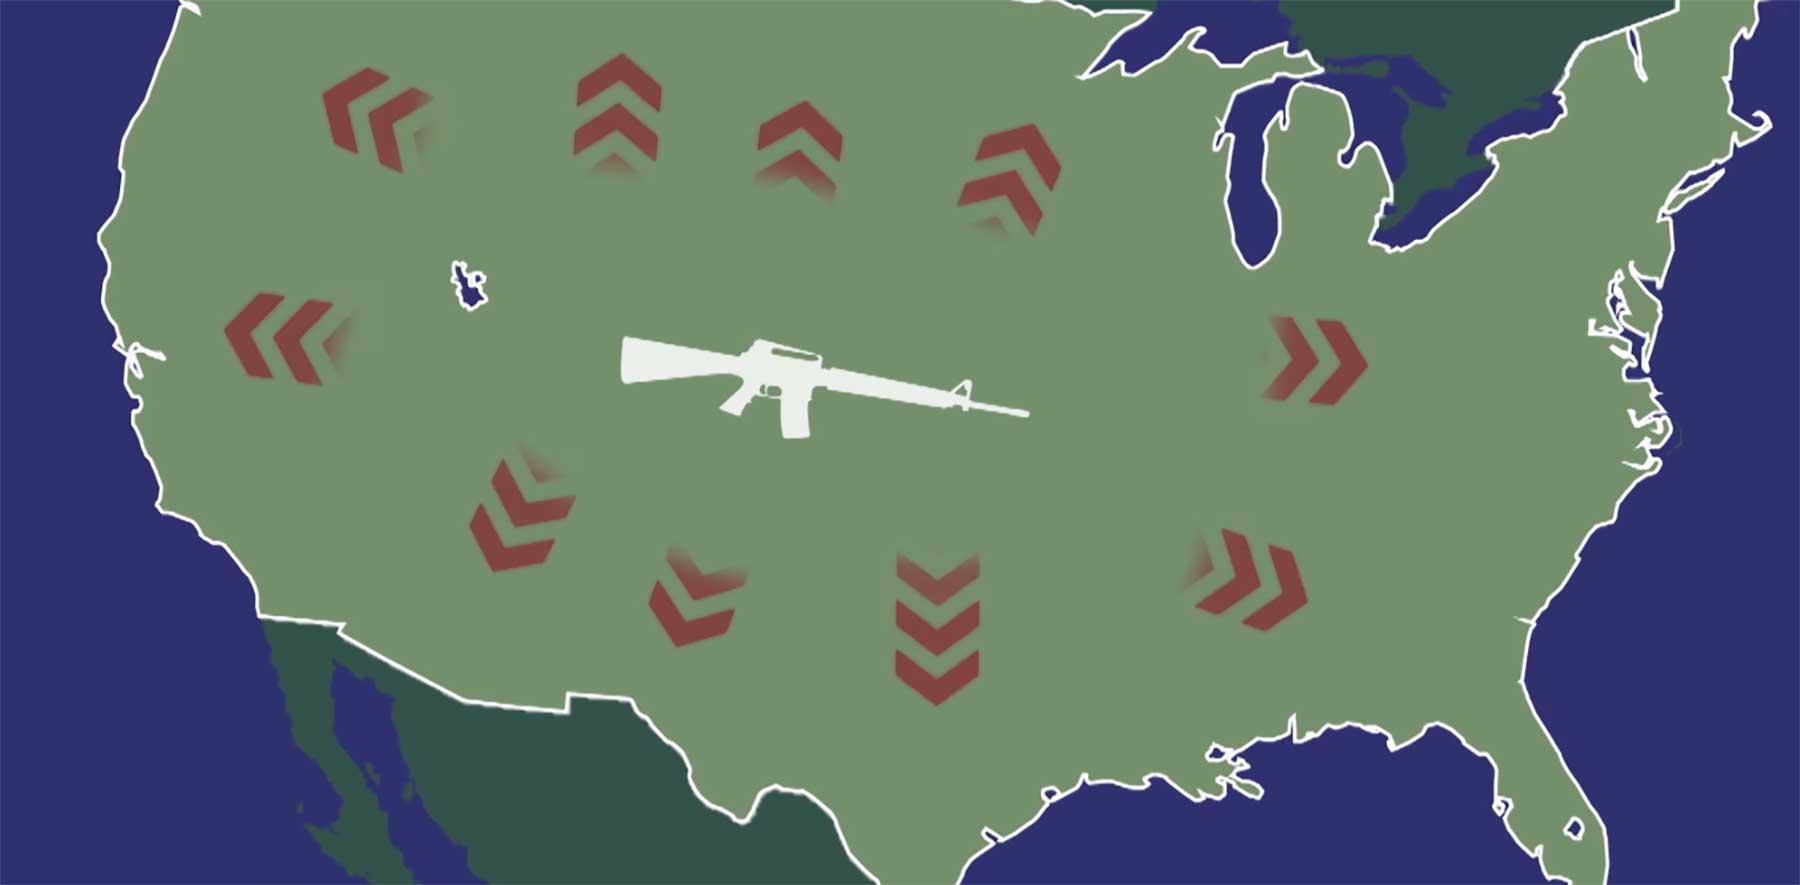 TV-Satire stellt US-Waffengeilheit als Krankheit dar NRA-Nonsensical-Rifle-Addiction 